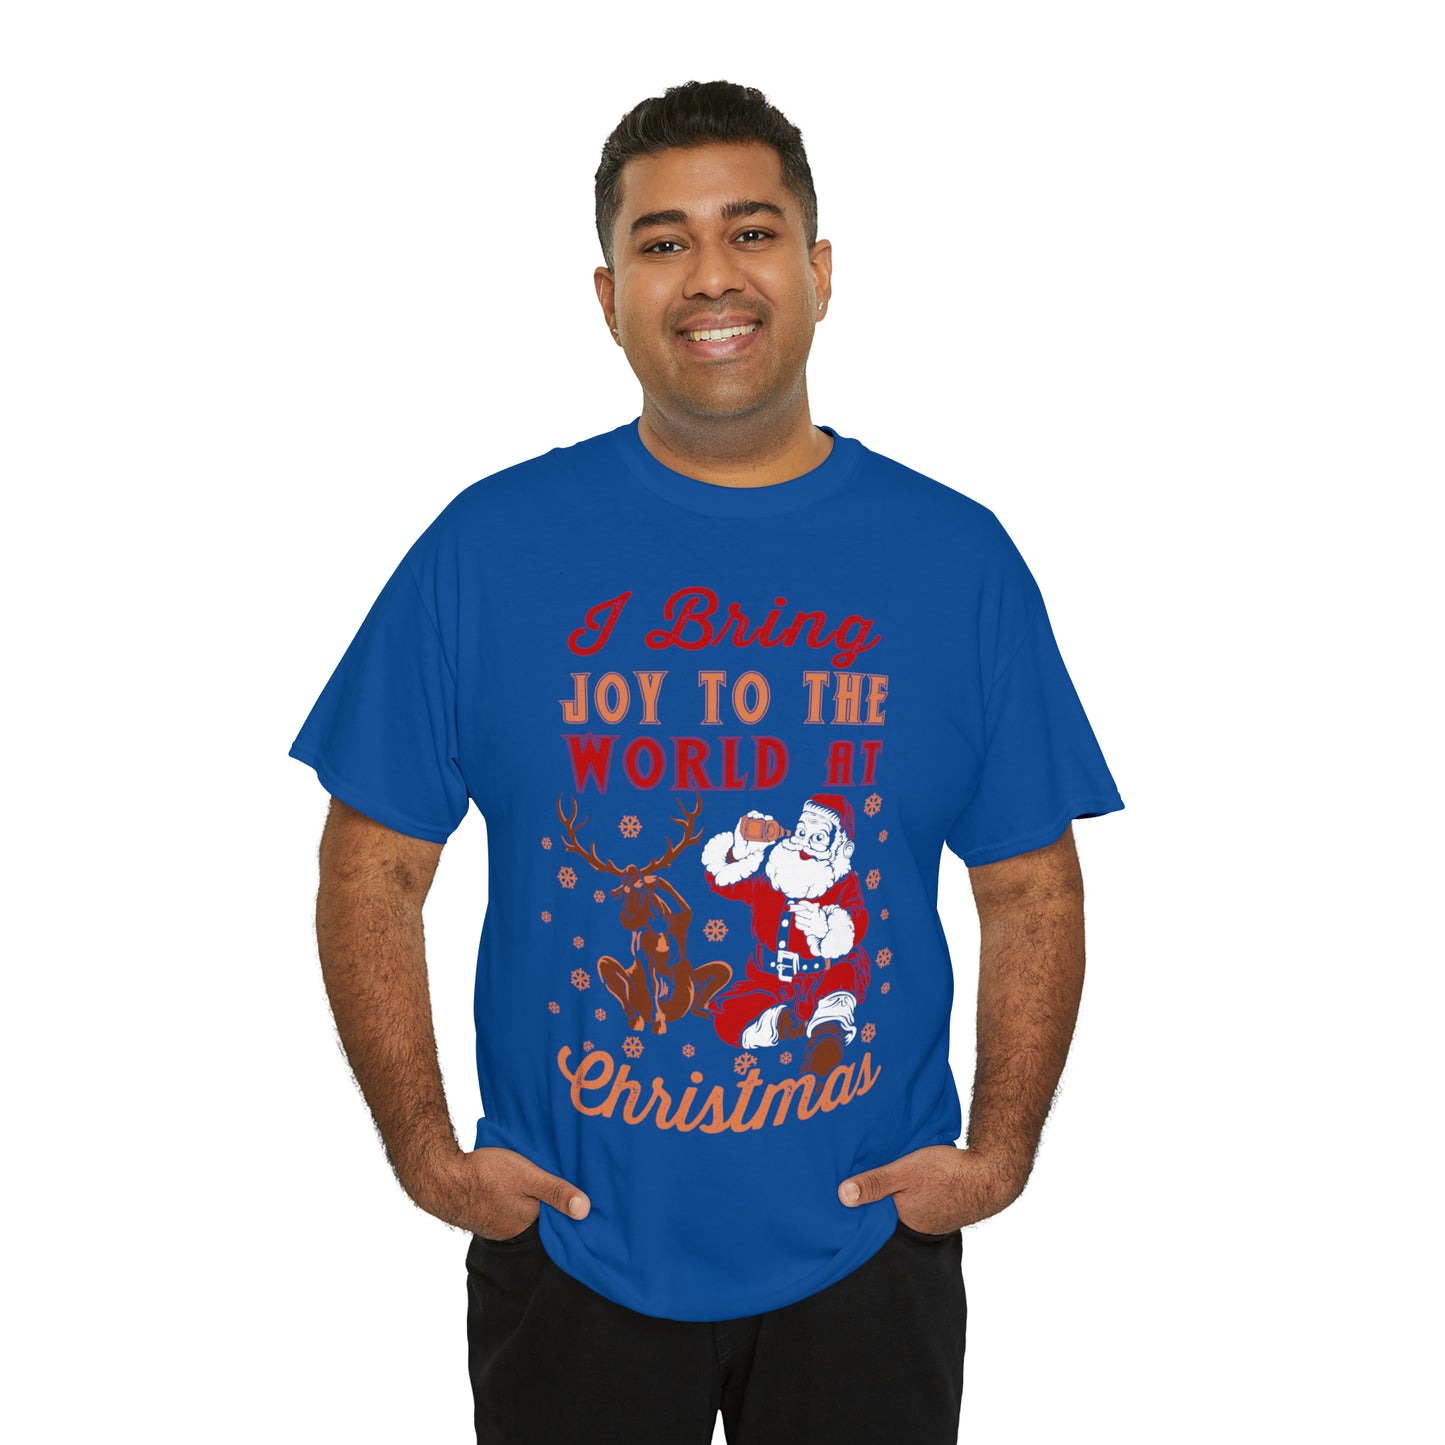 I bring Joy to the World at Christmas Shirt, Christmas Tee Christmas outfit, Christmas gifts